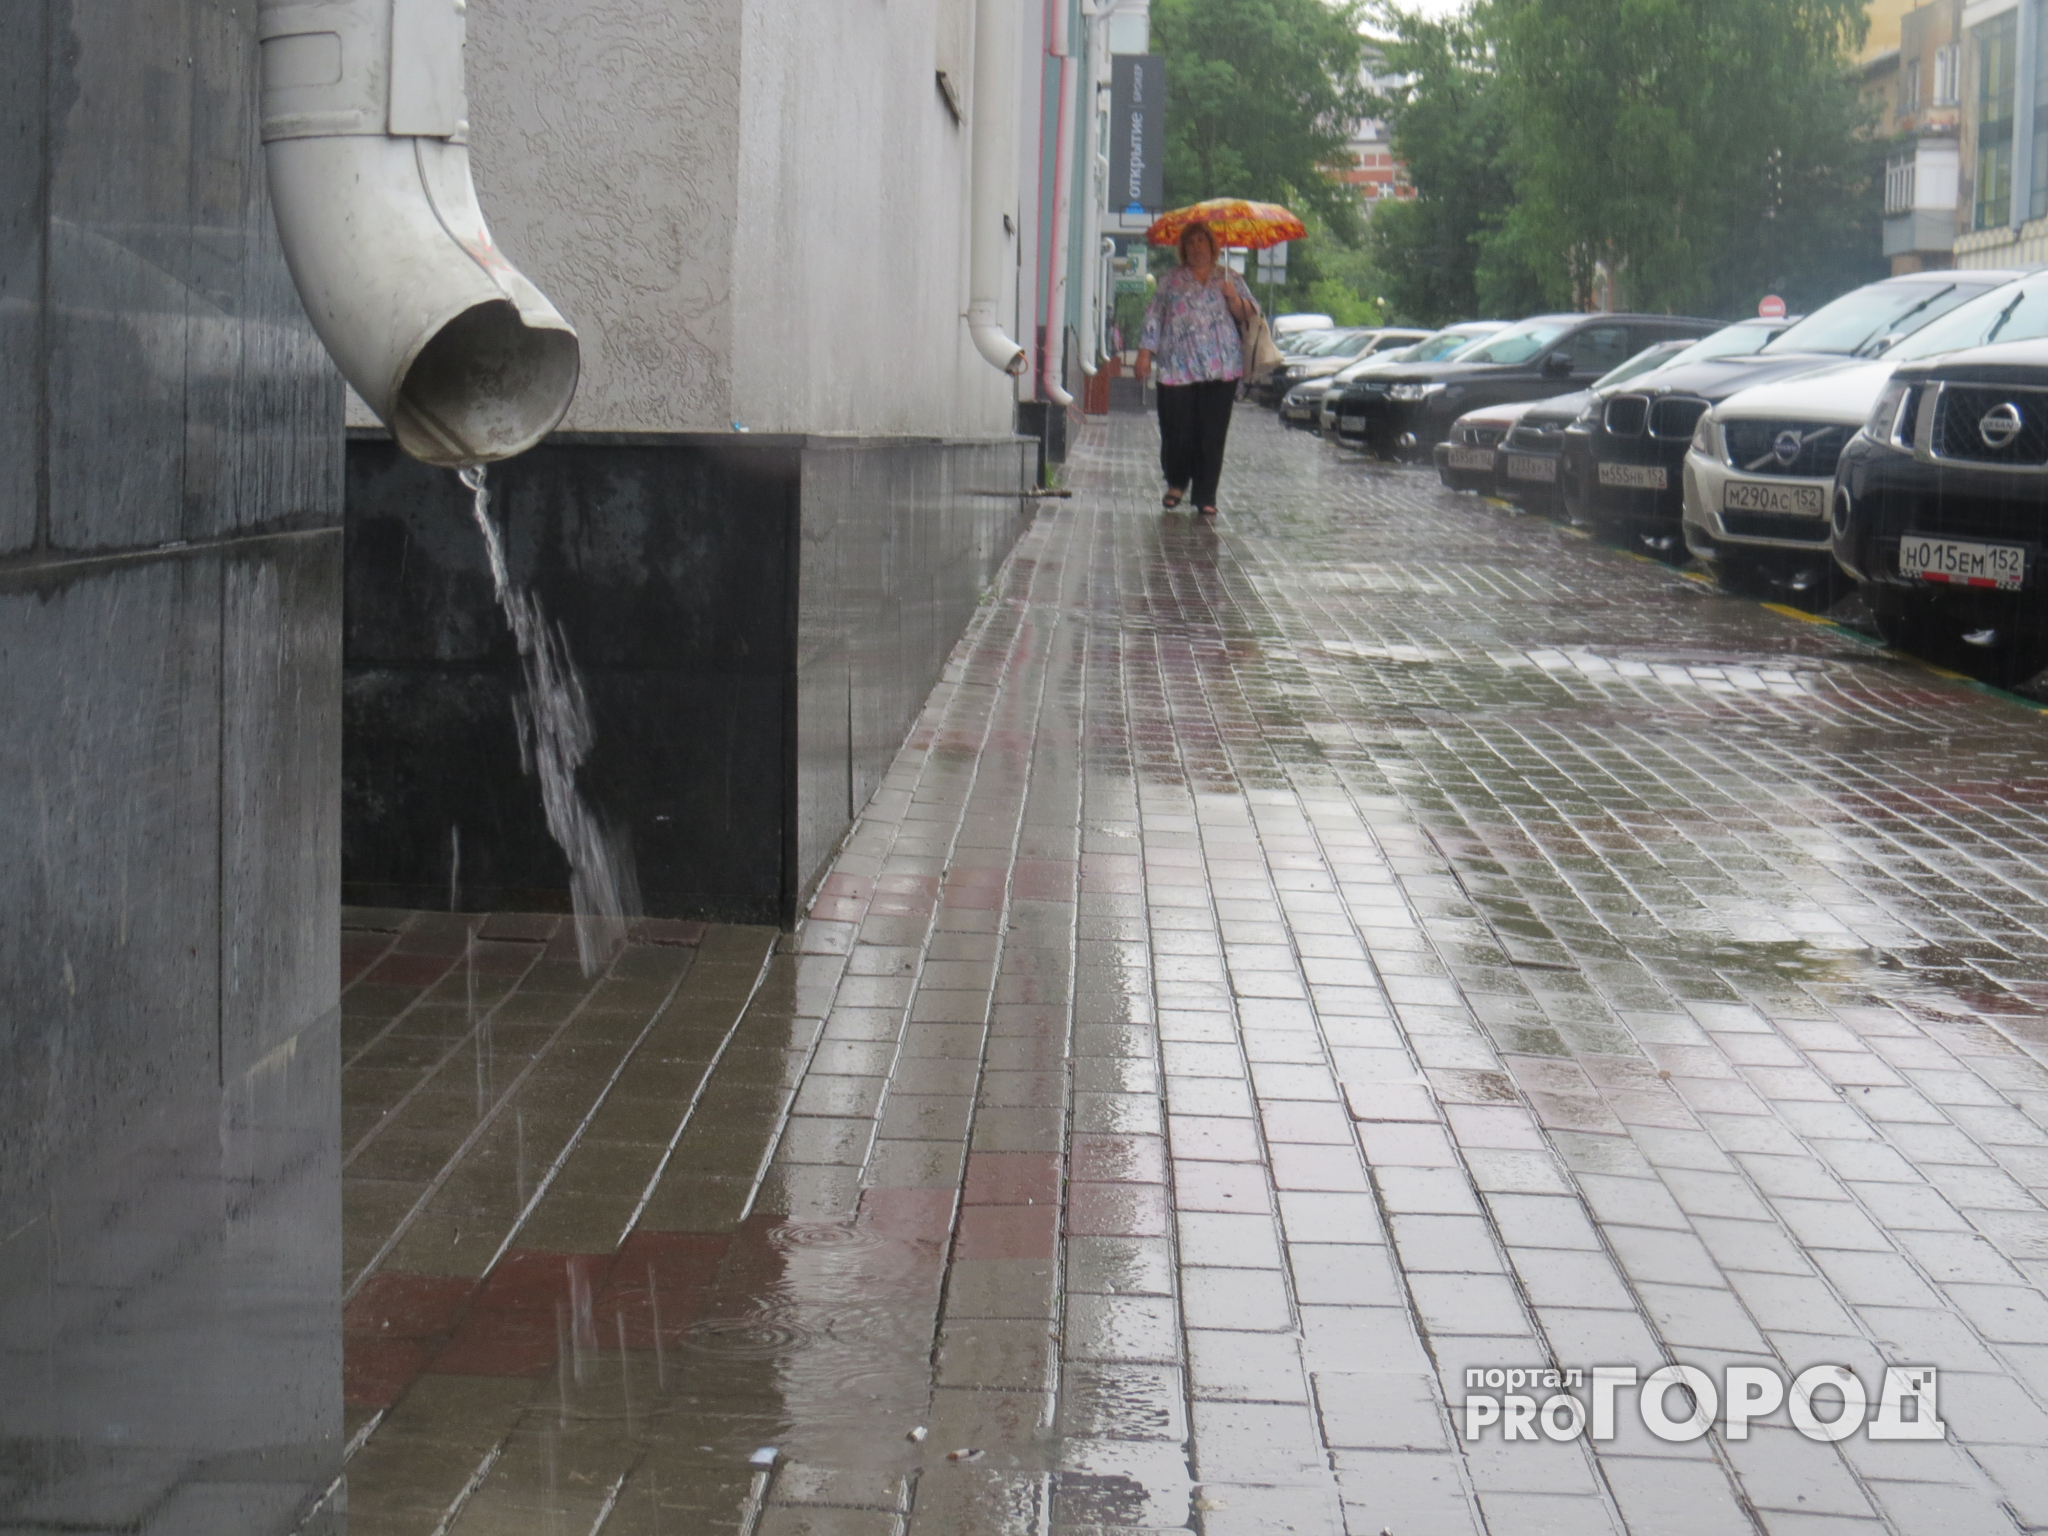 Прогноз погоды: закончатся ли дожди в первую неделю июля в Кирове?